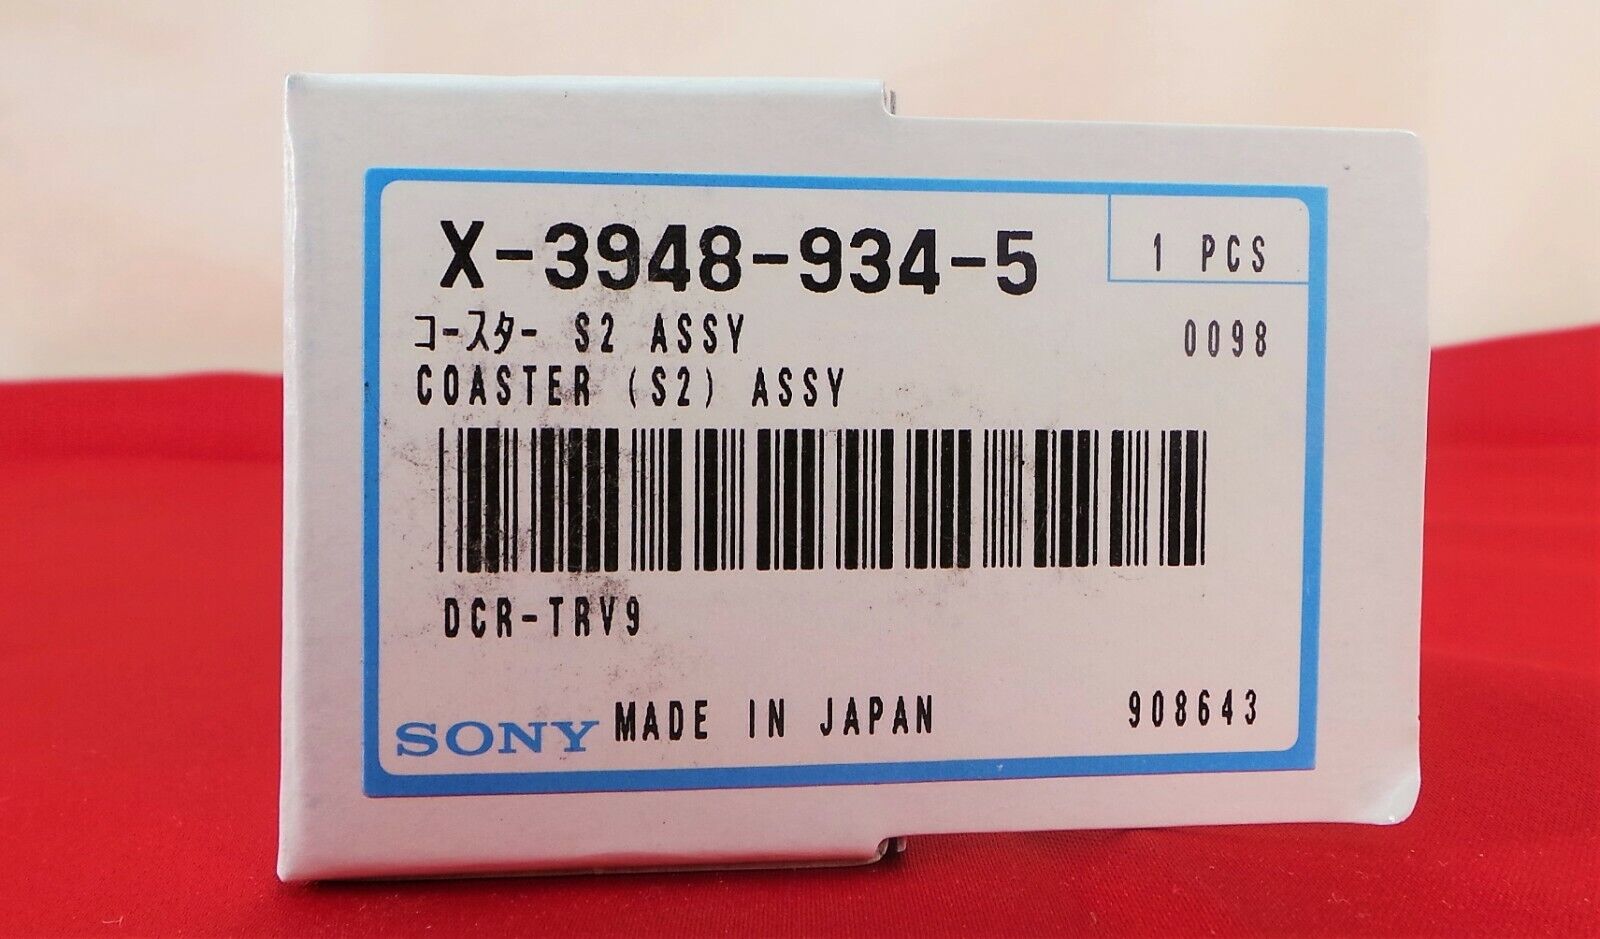 Sony Coaster (s2) Assembly X-3948-934-5